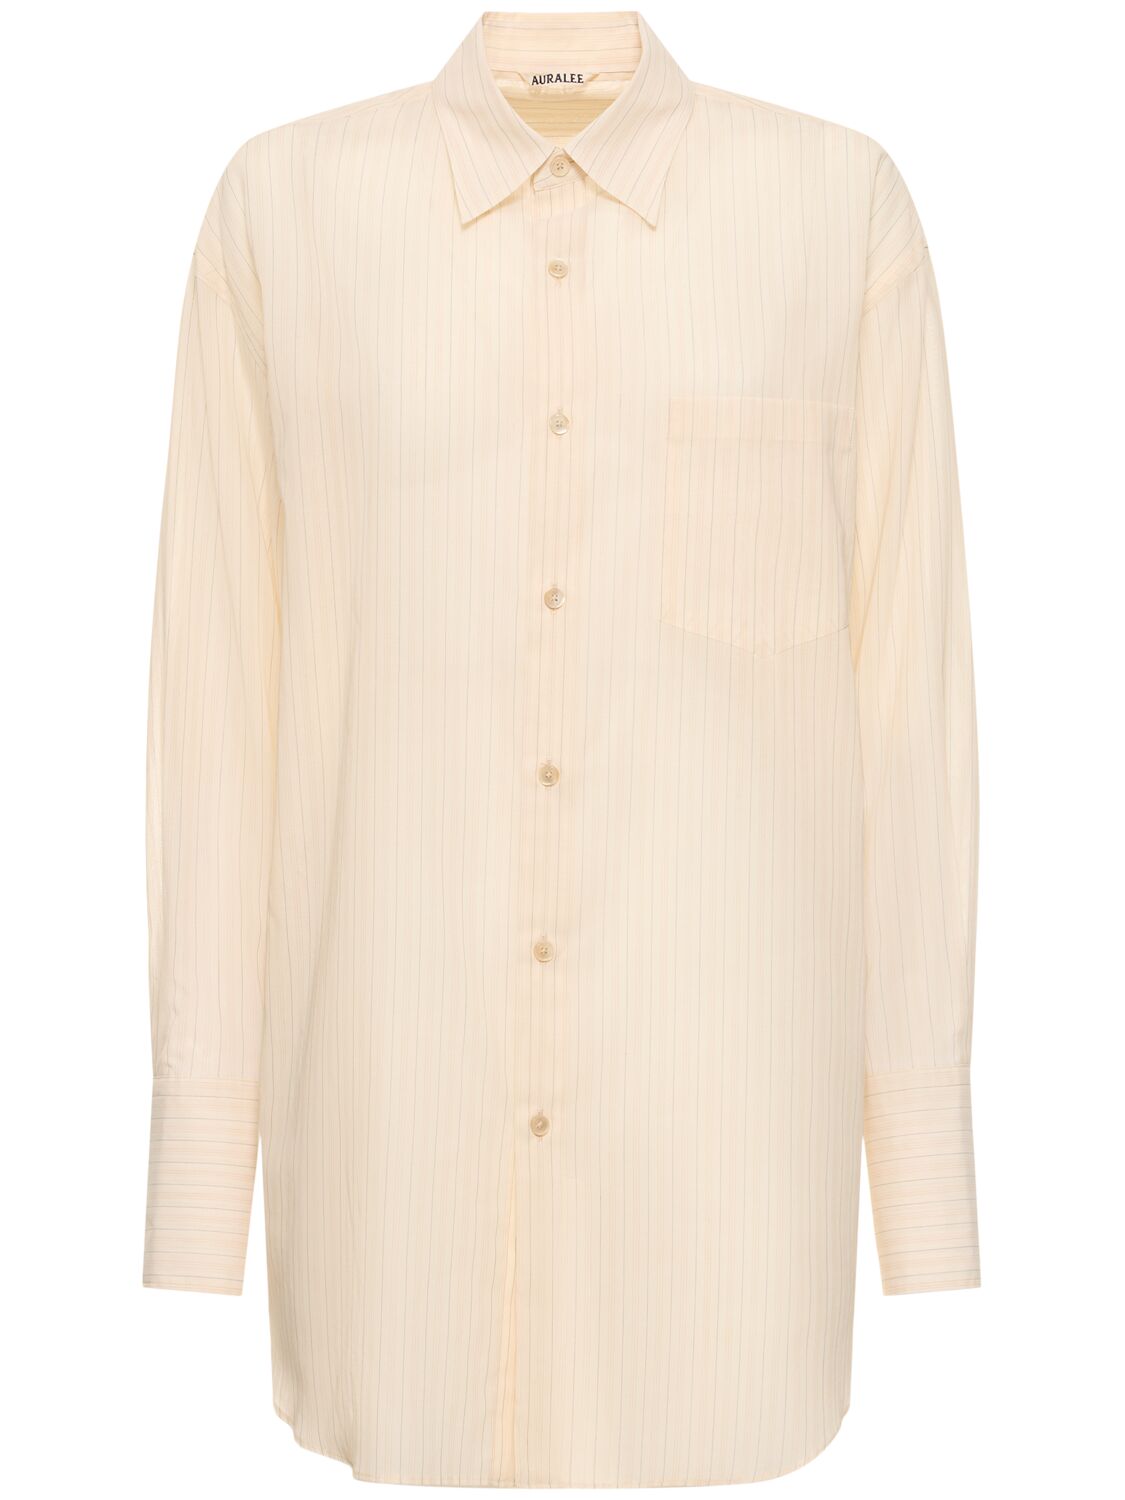 Auralee Striped Organza Cotton Shirt In Beige,multi